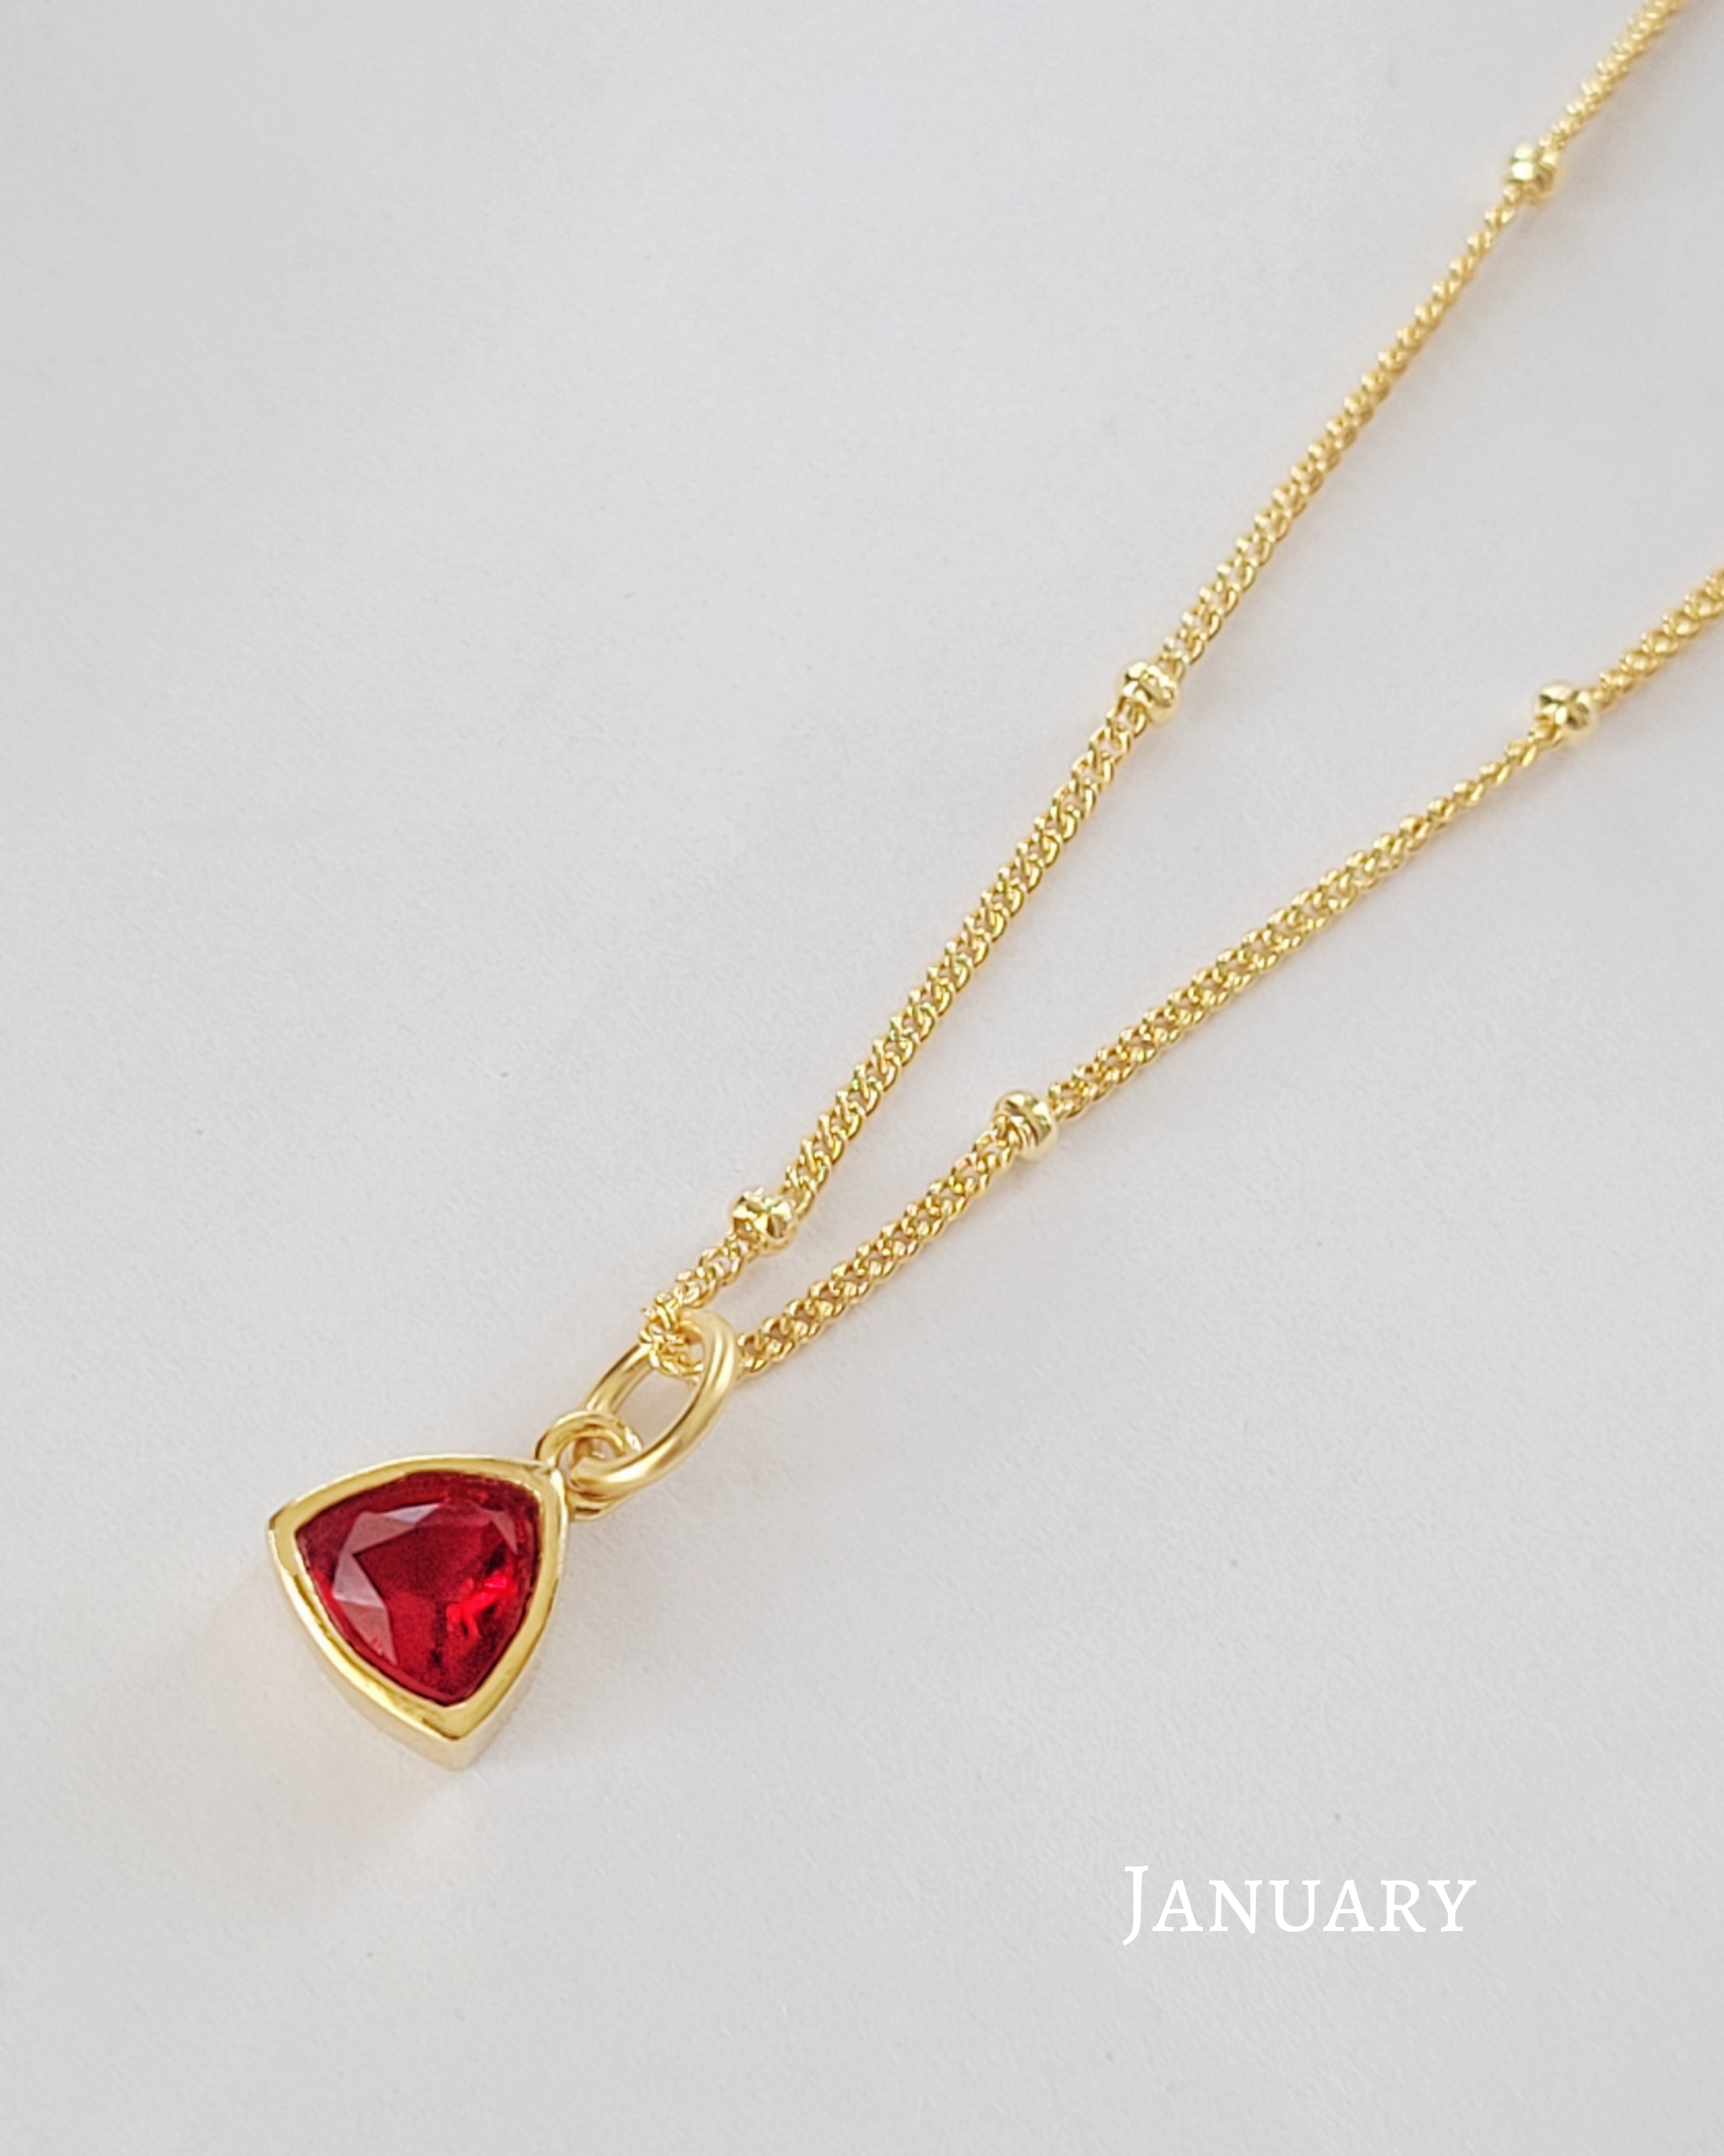 January Birthstone Necklace UK